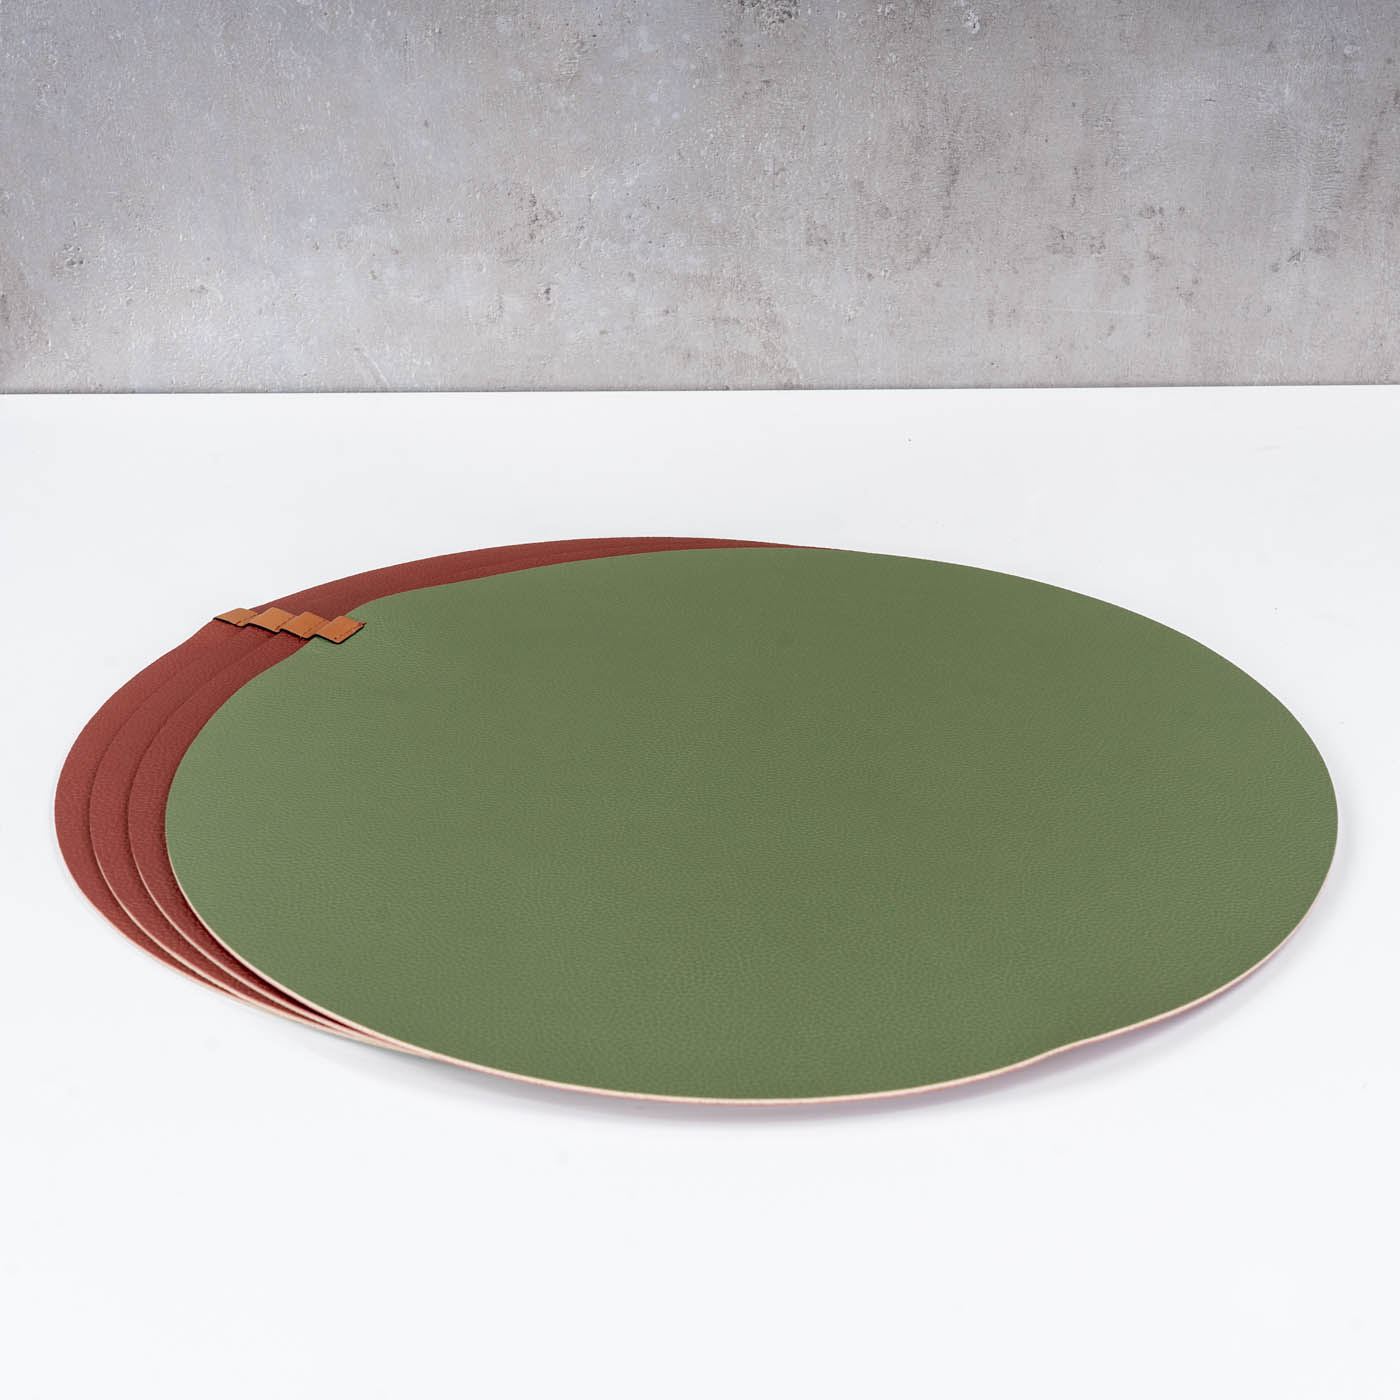 4er Set Platzset Tischsets 38cm Rund Tischdeko Rot Grün Lederoptik Beidseitig